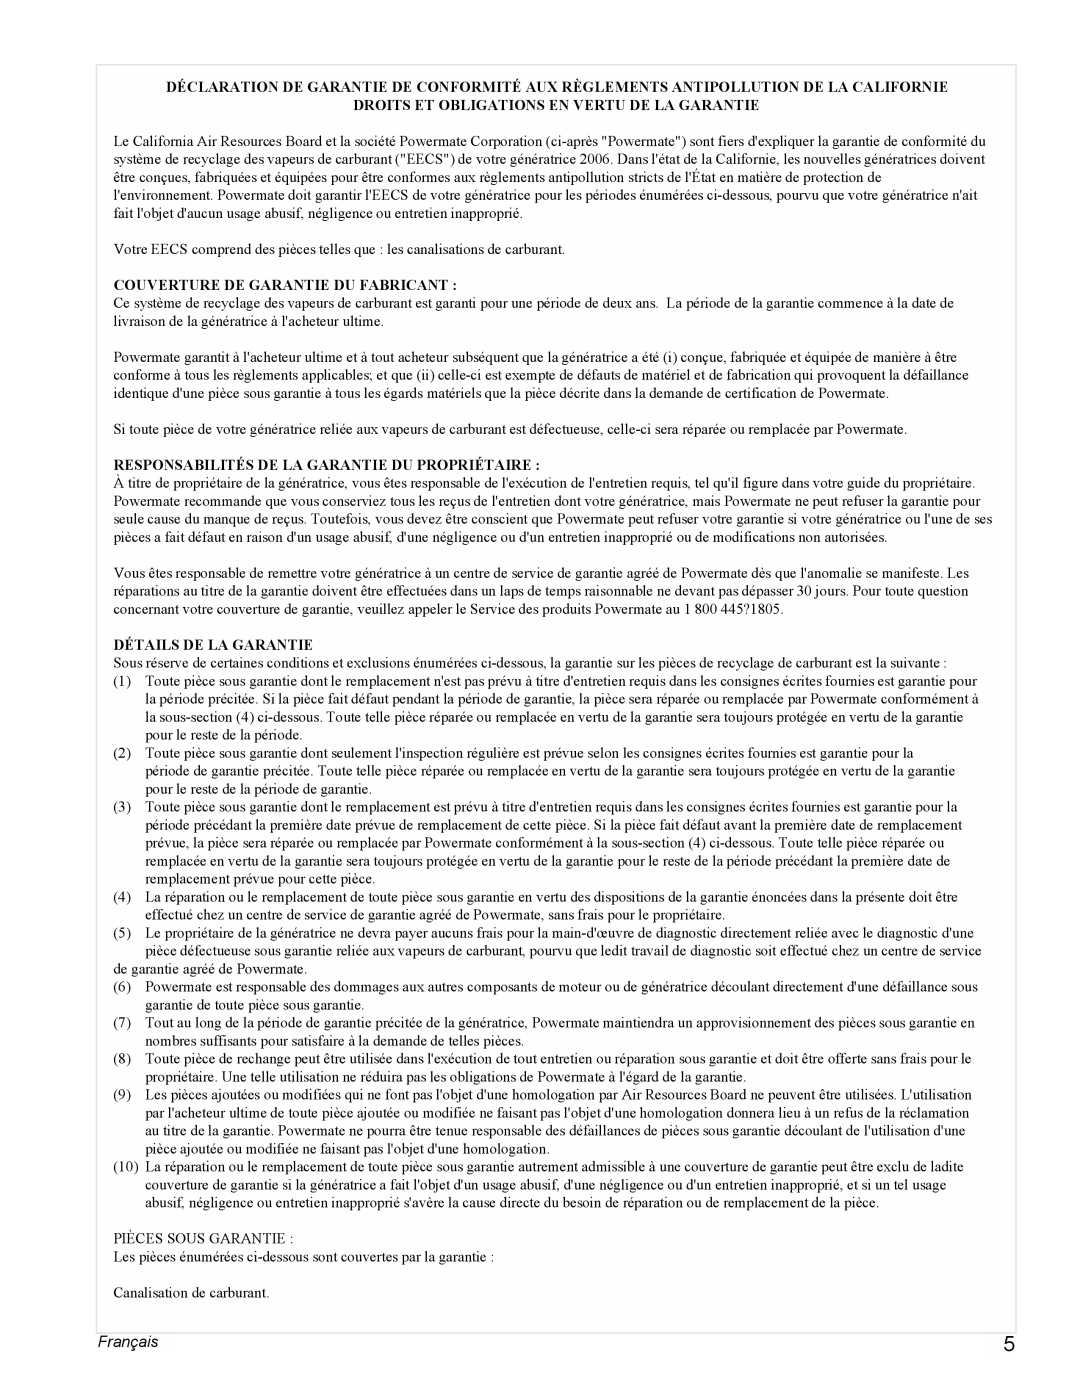 Powermate PMC523202 manual Français, Droits Et Obligations En Vertu De La Garantie, Couverture De Garantie Du Fabricant 